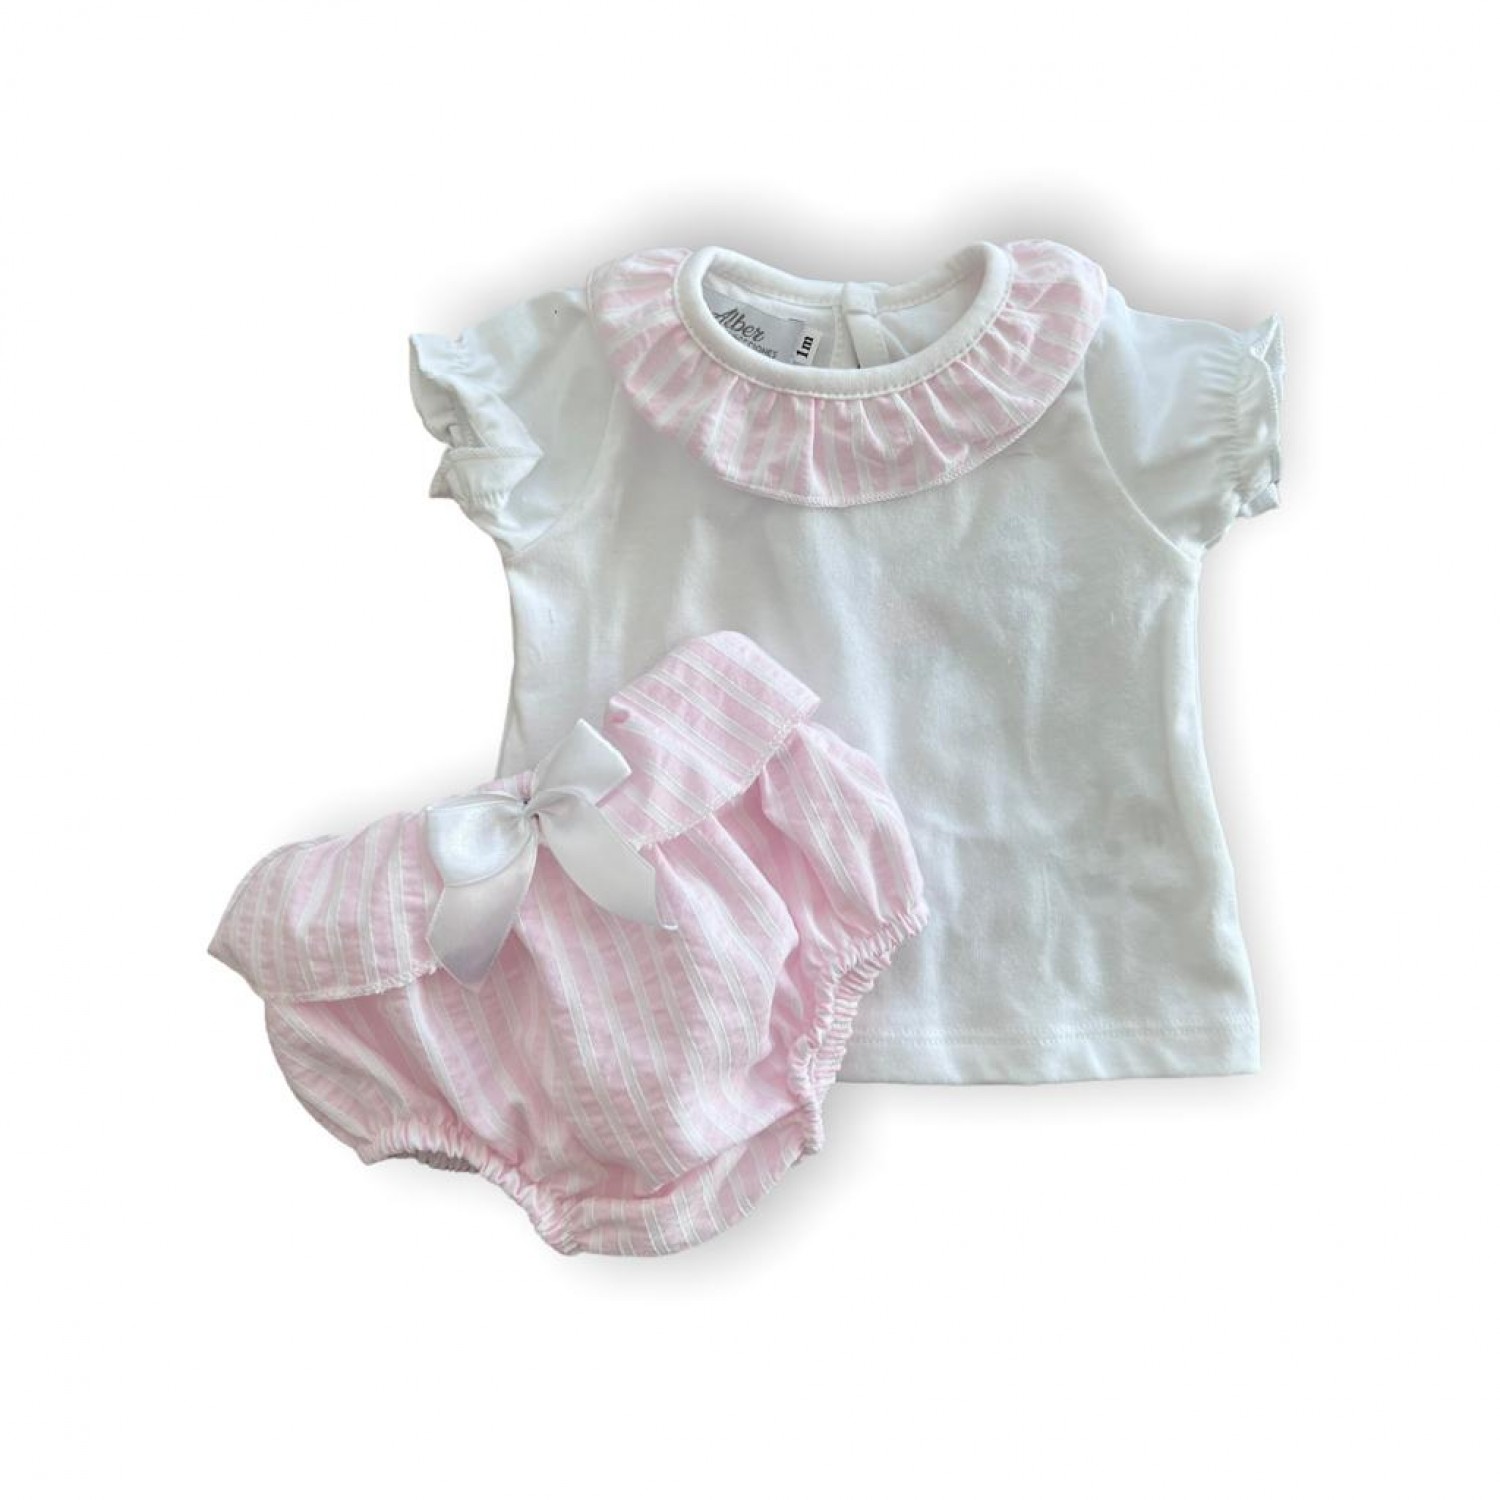 Conjunto para niña. Camiseta blanca y braguita de rayas rosa